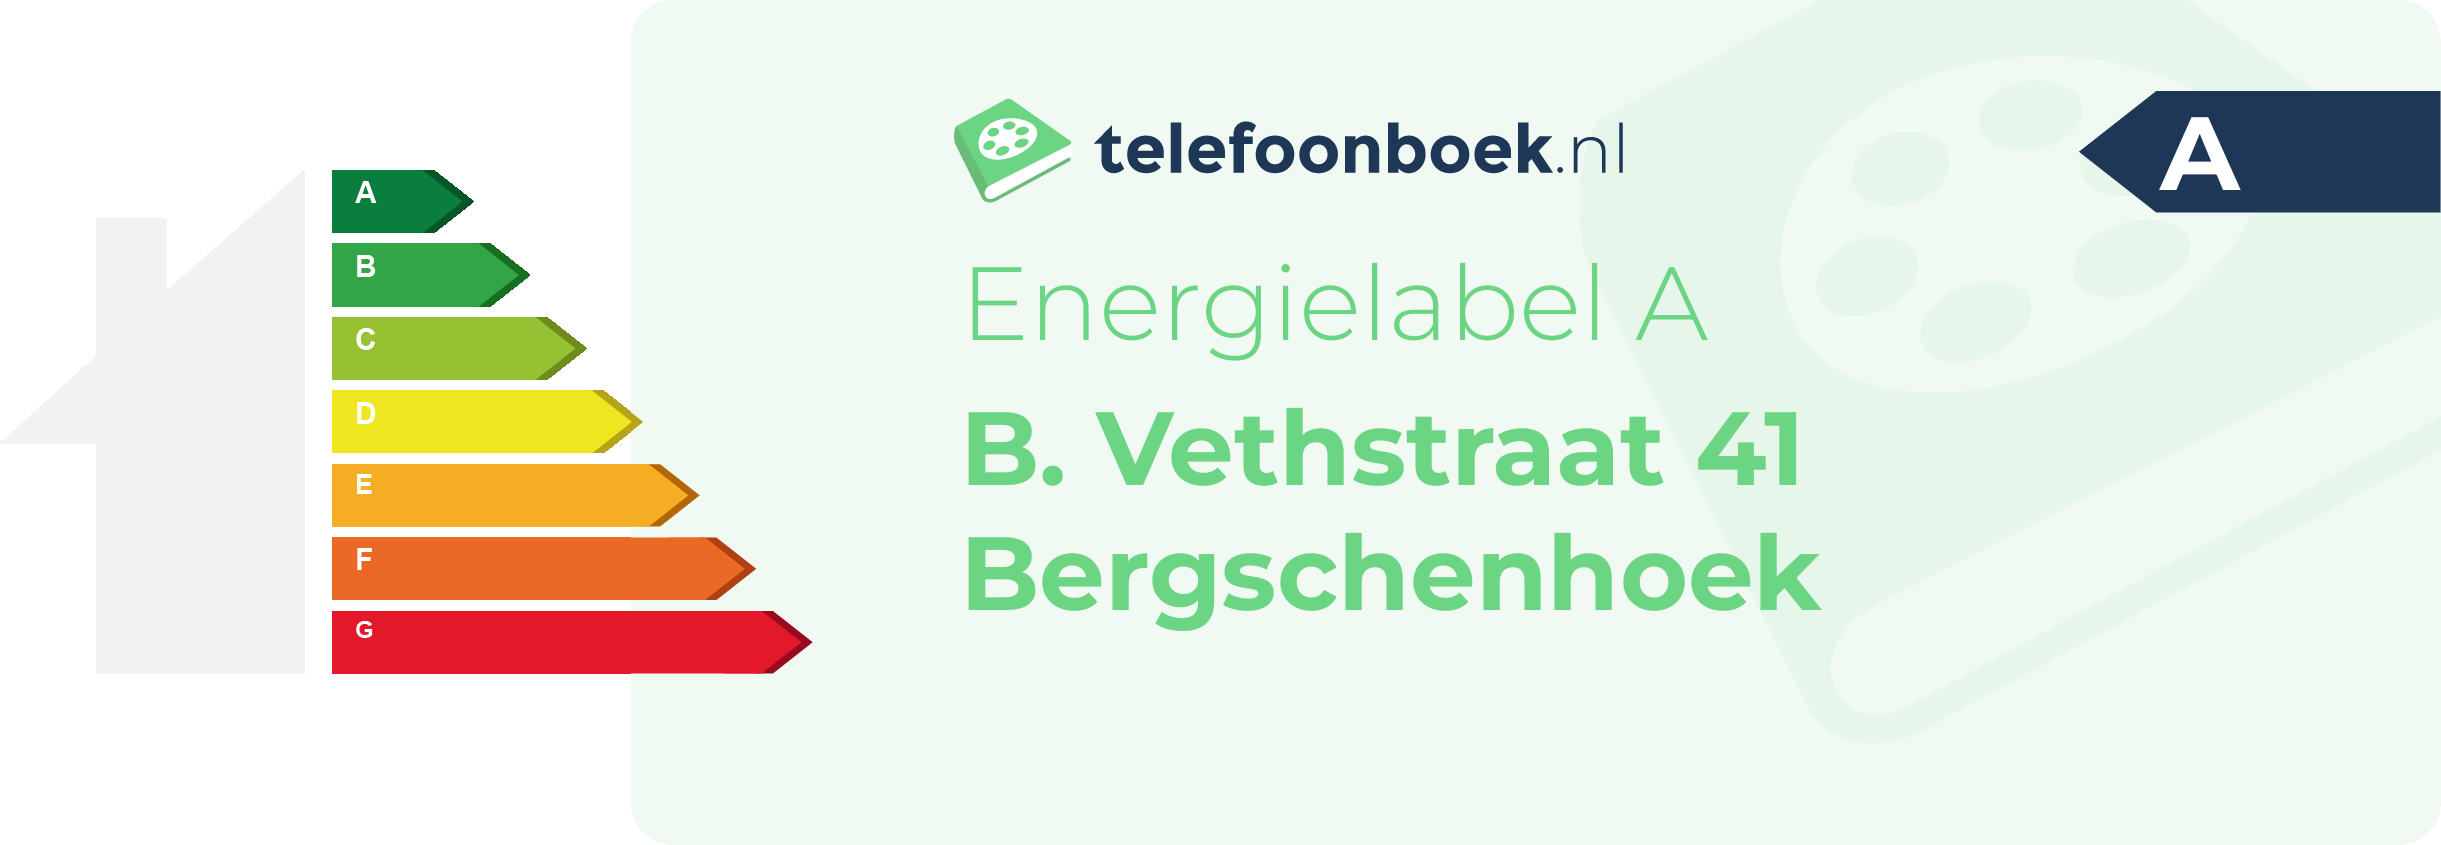 Energielabel B. Vethstraat 41 Bergschenhoek